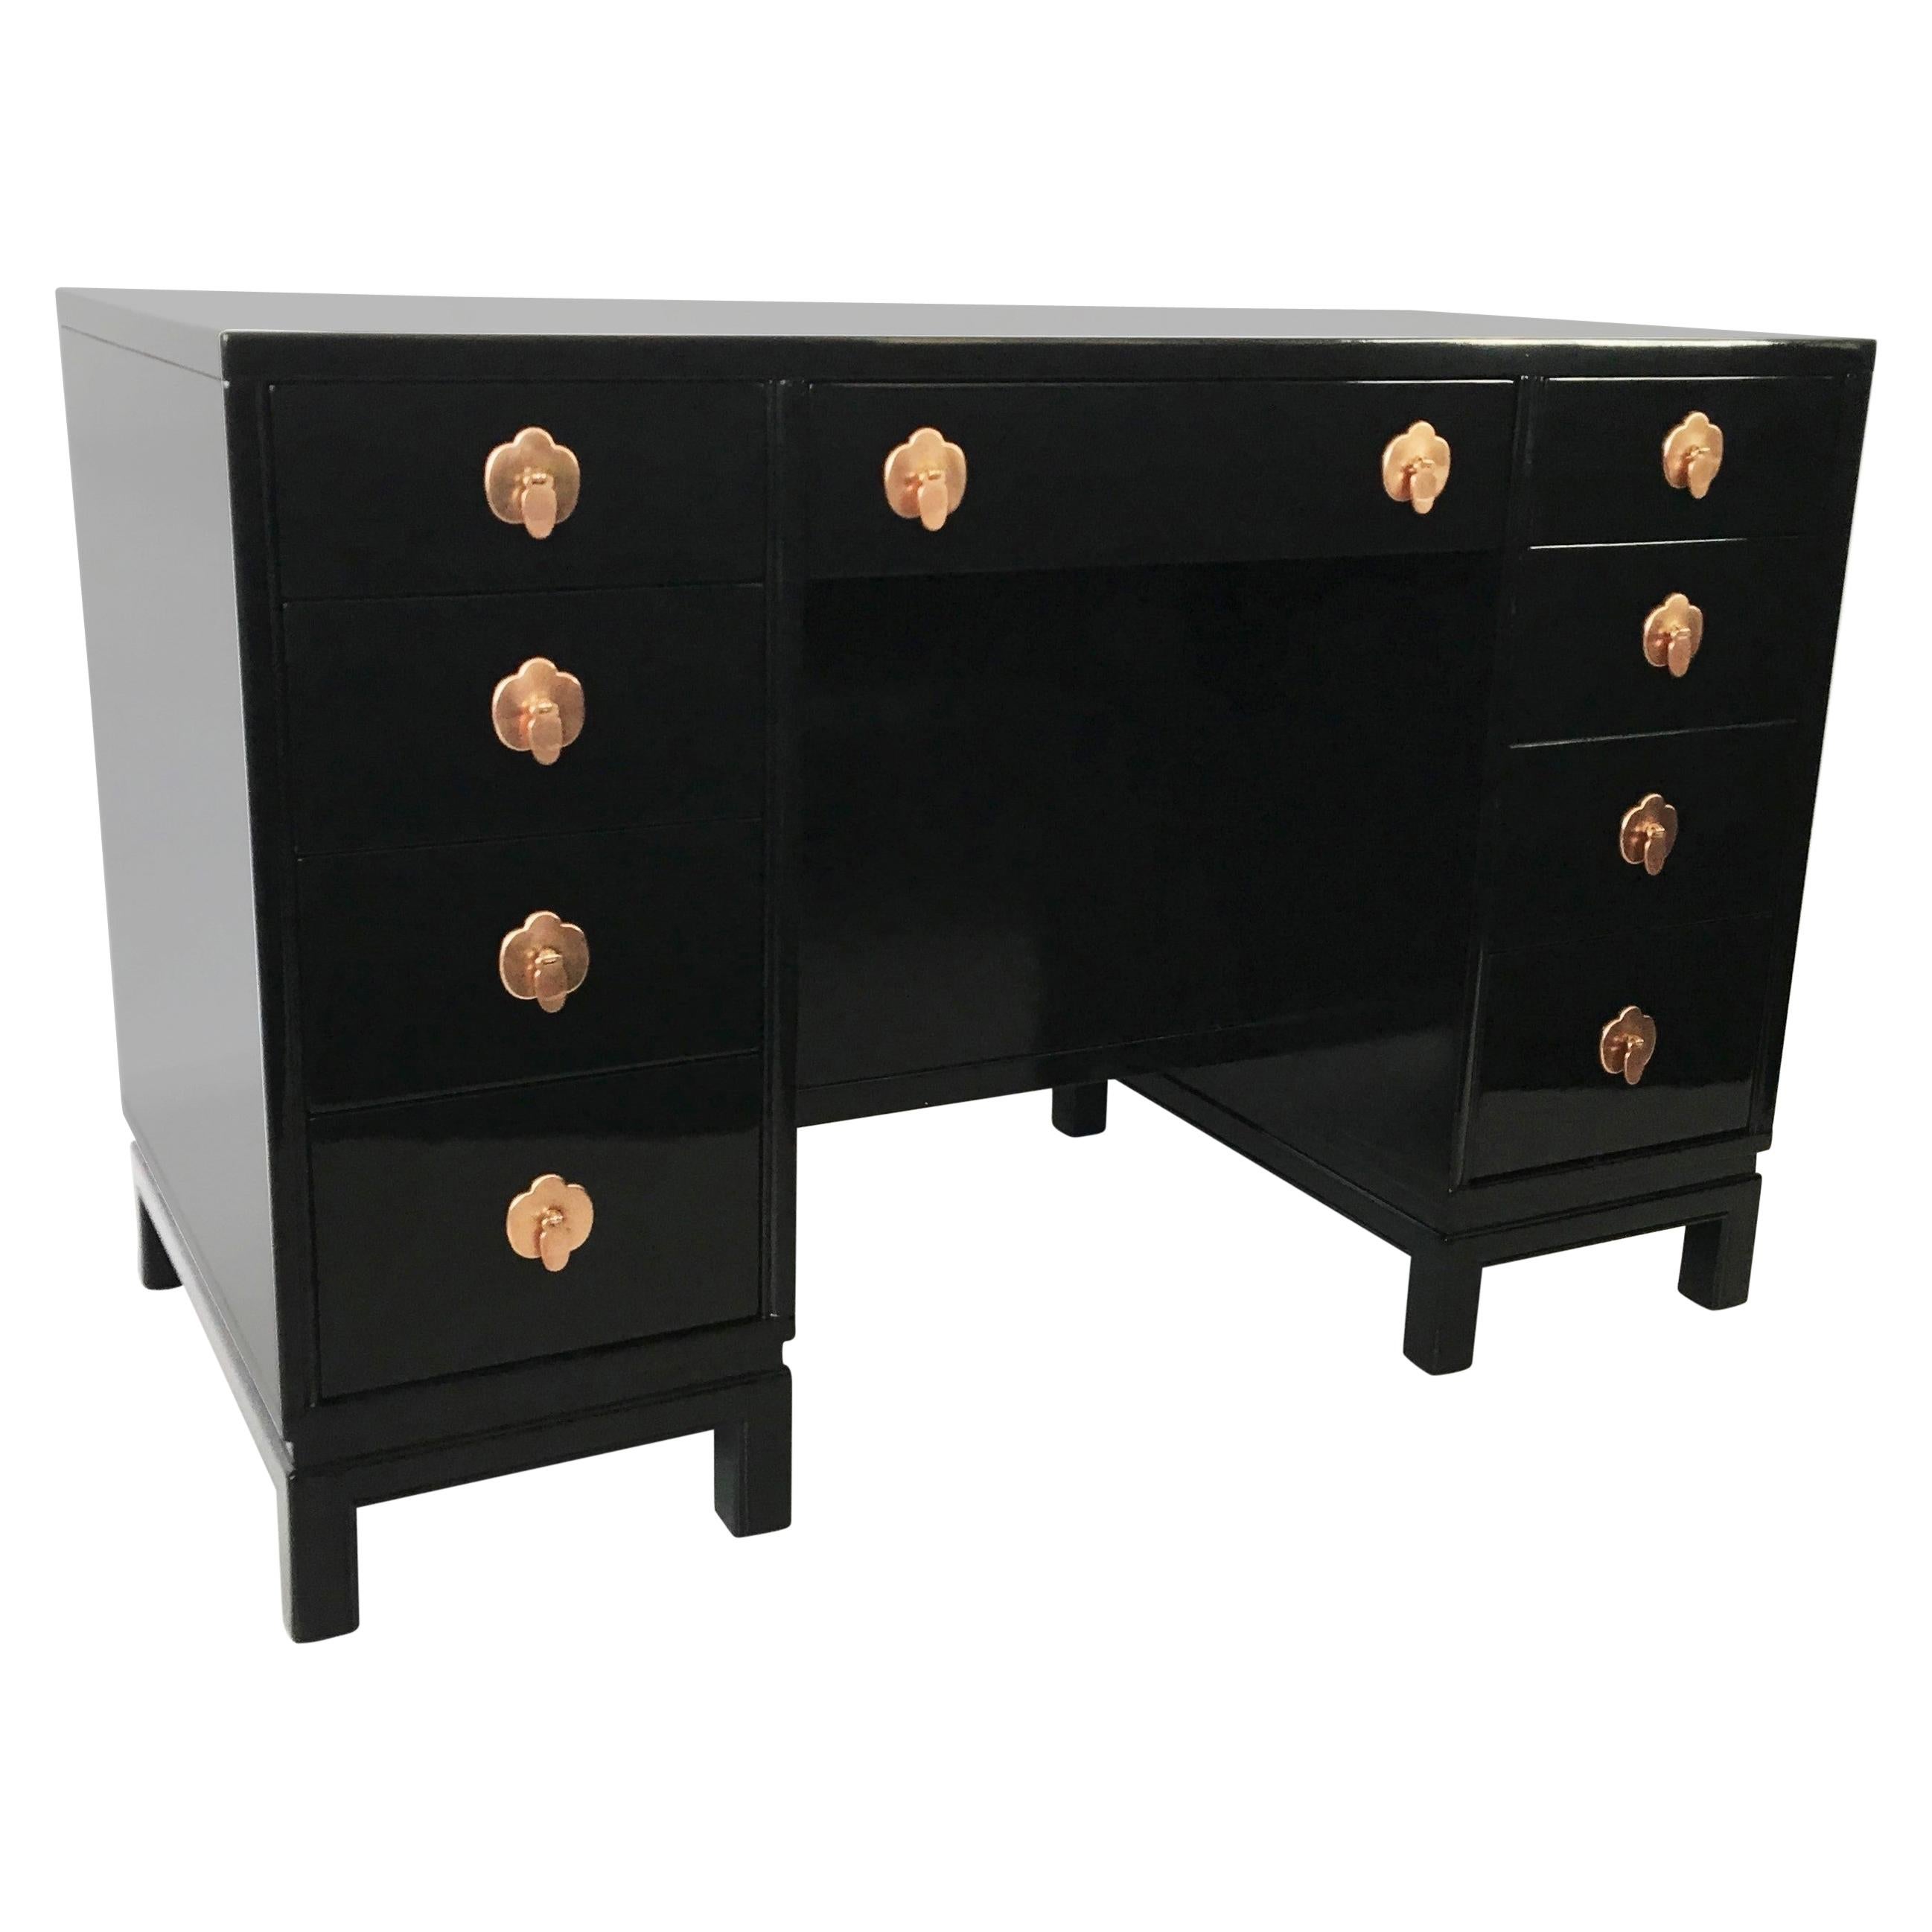 Midcentury Black Lacquered Desk by Landstorm Furniture